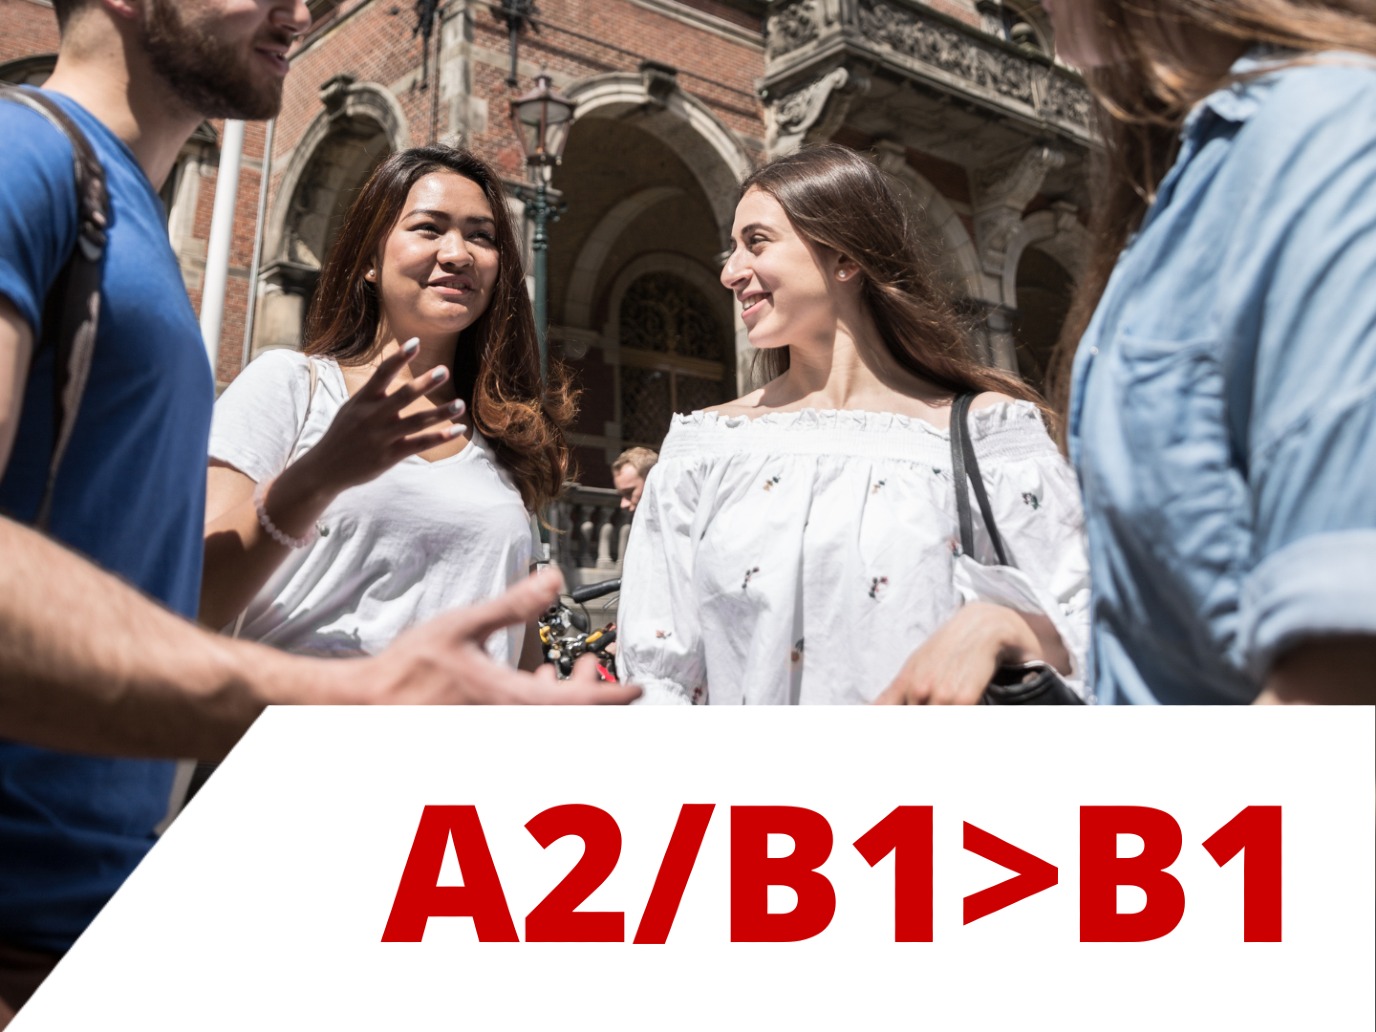 Nederlands voor Duitstaligen A2/B1>B1